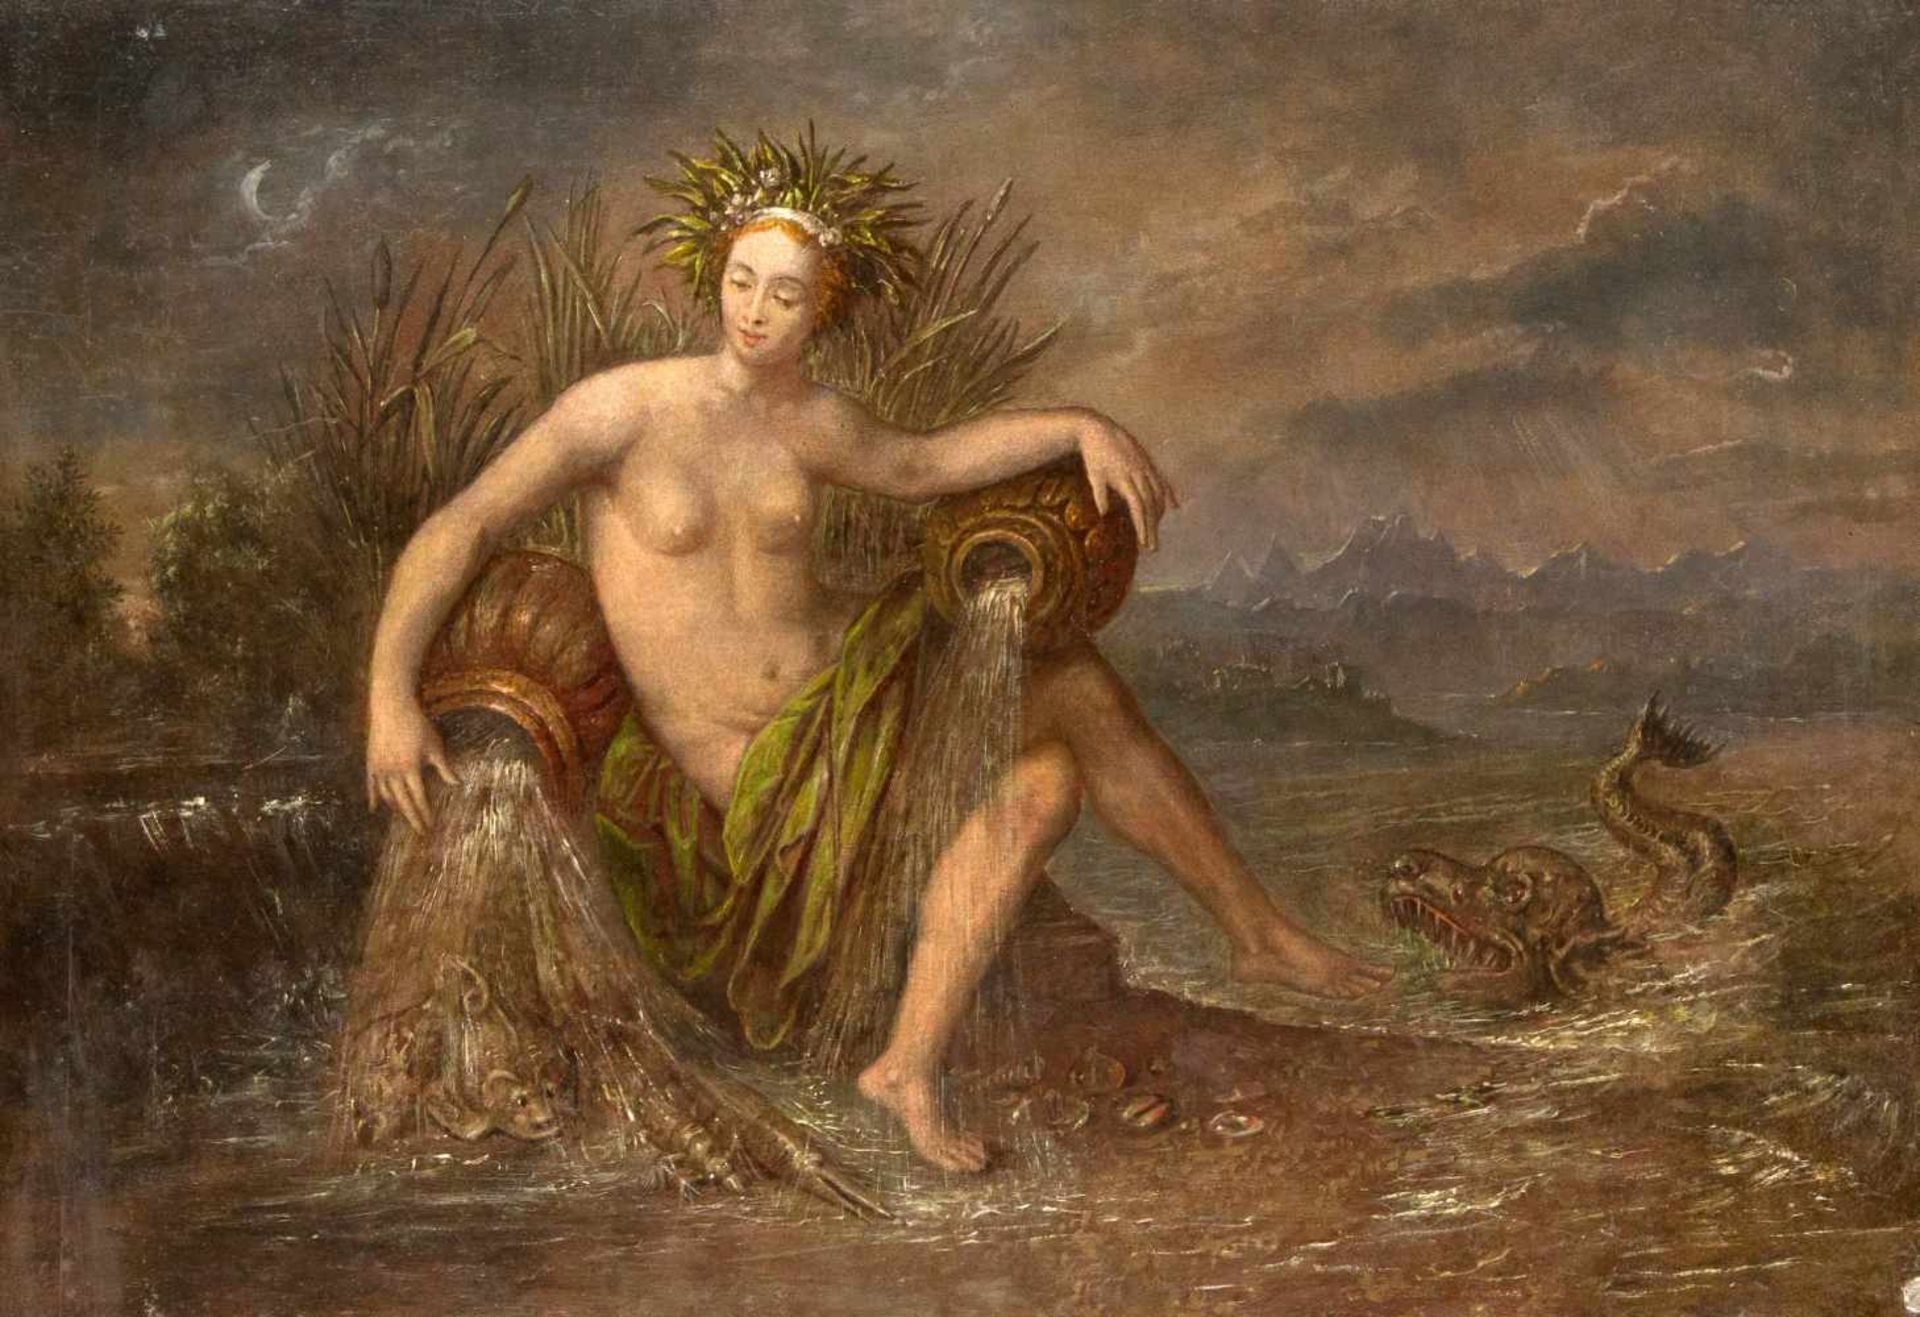 Anonymer Maler des 19. Jh., Personifikation des Elementes "Wasser" ("Aqua"), Darstellungals ein am